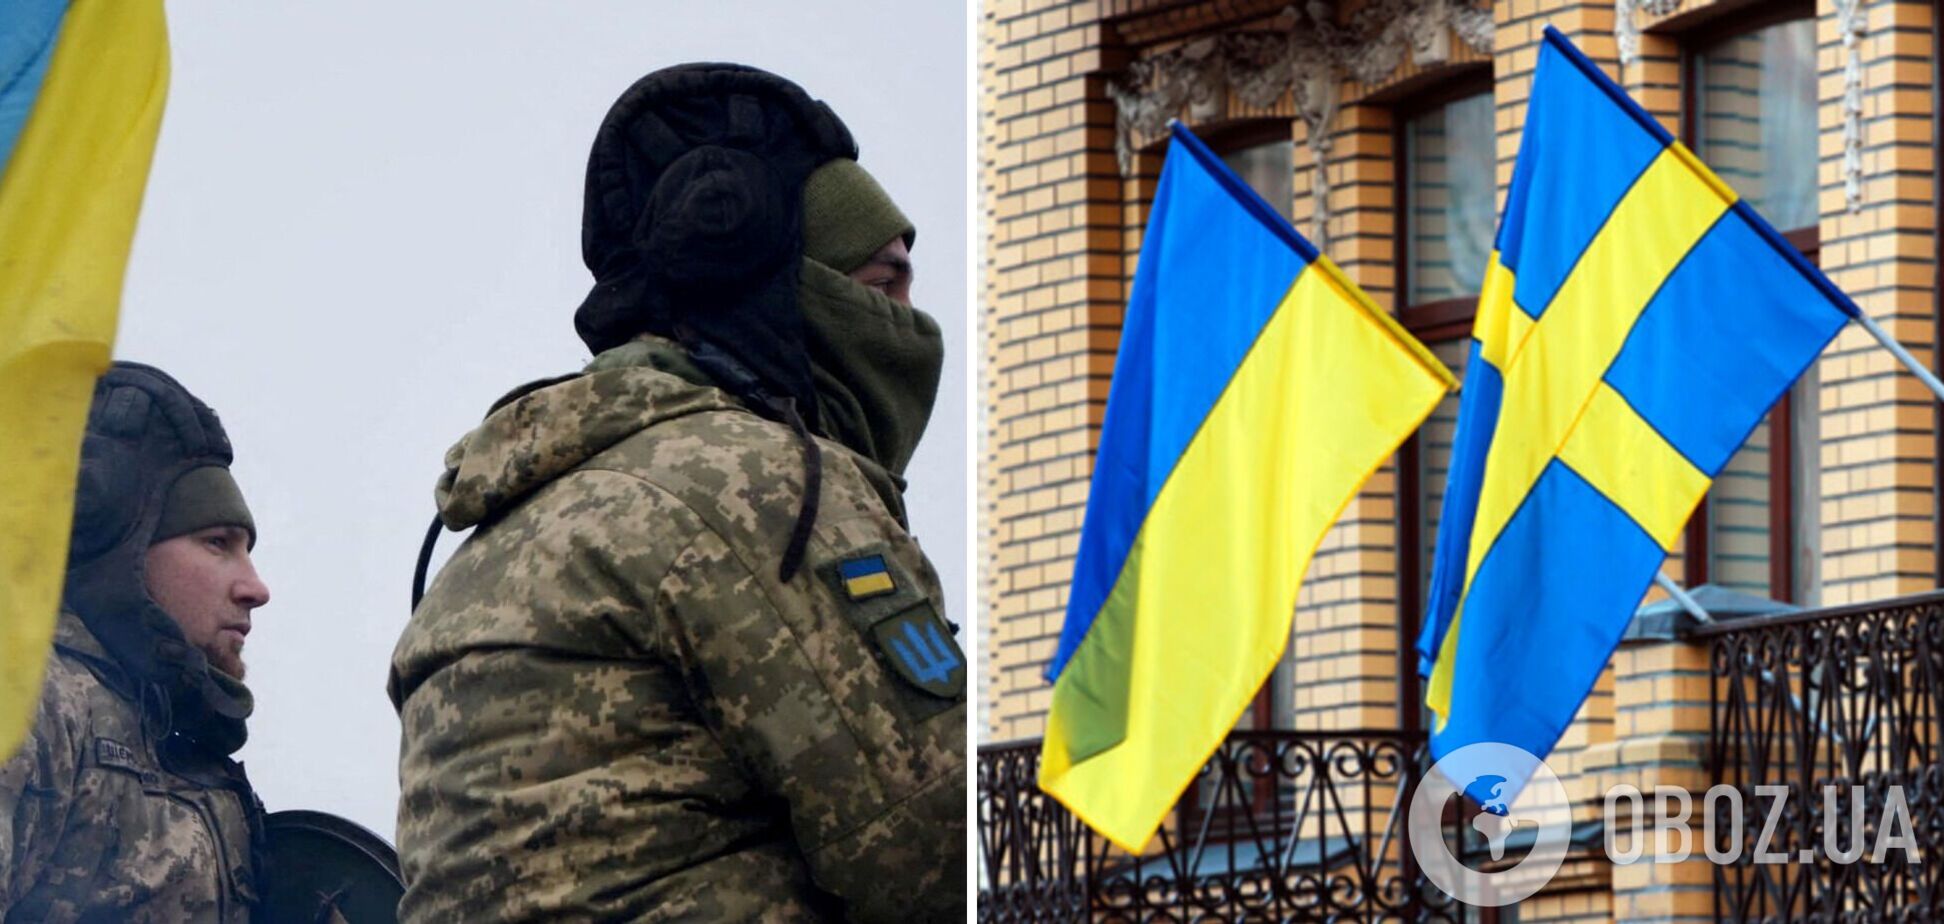 Швеция поддержала Украину